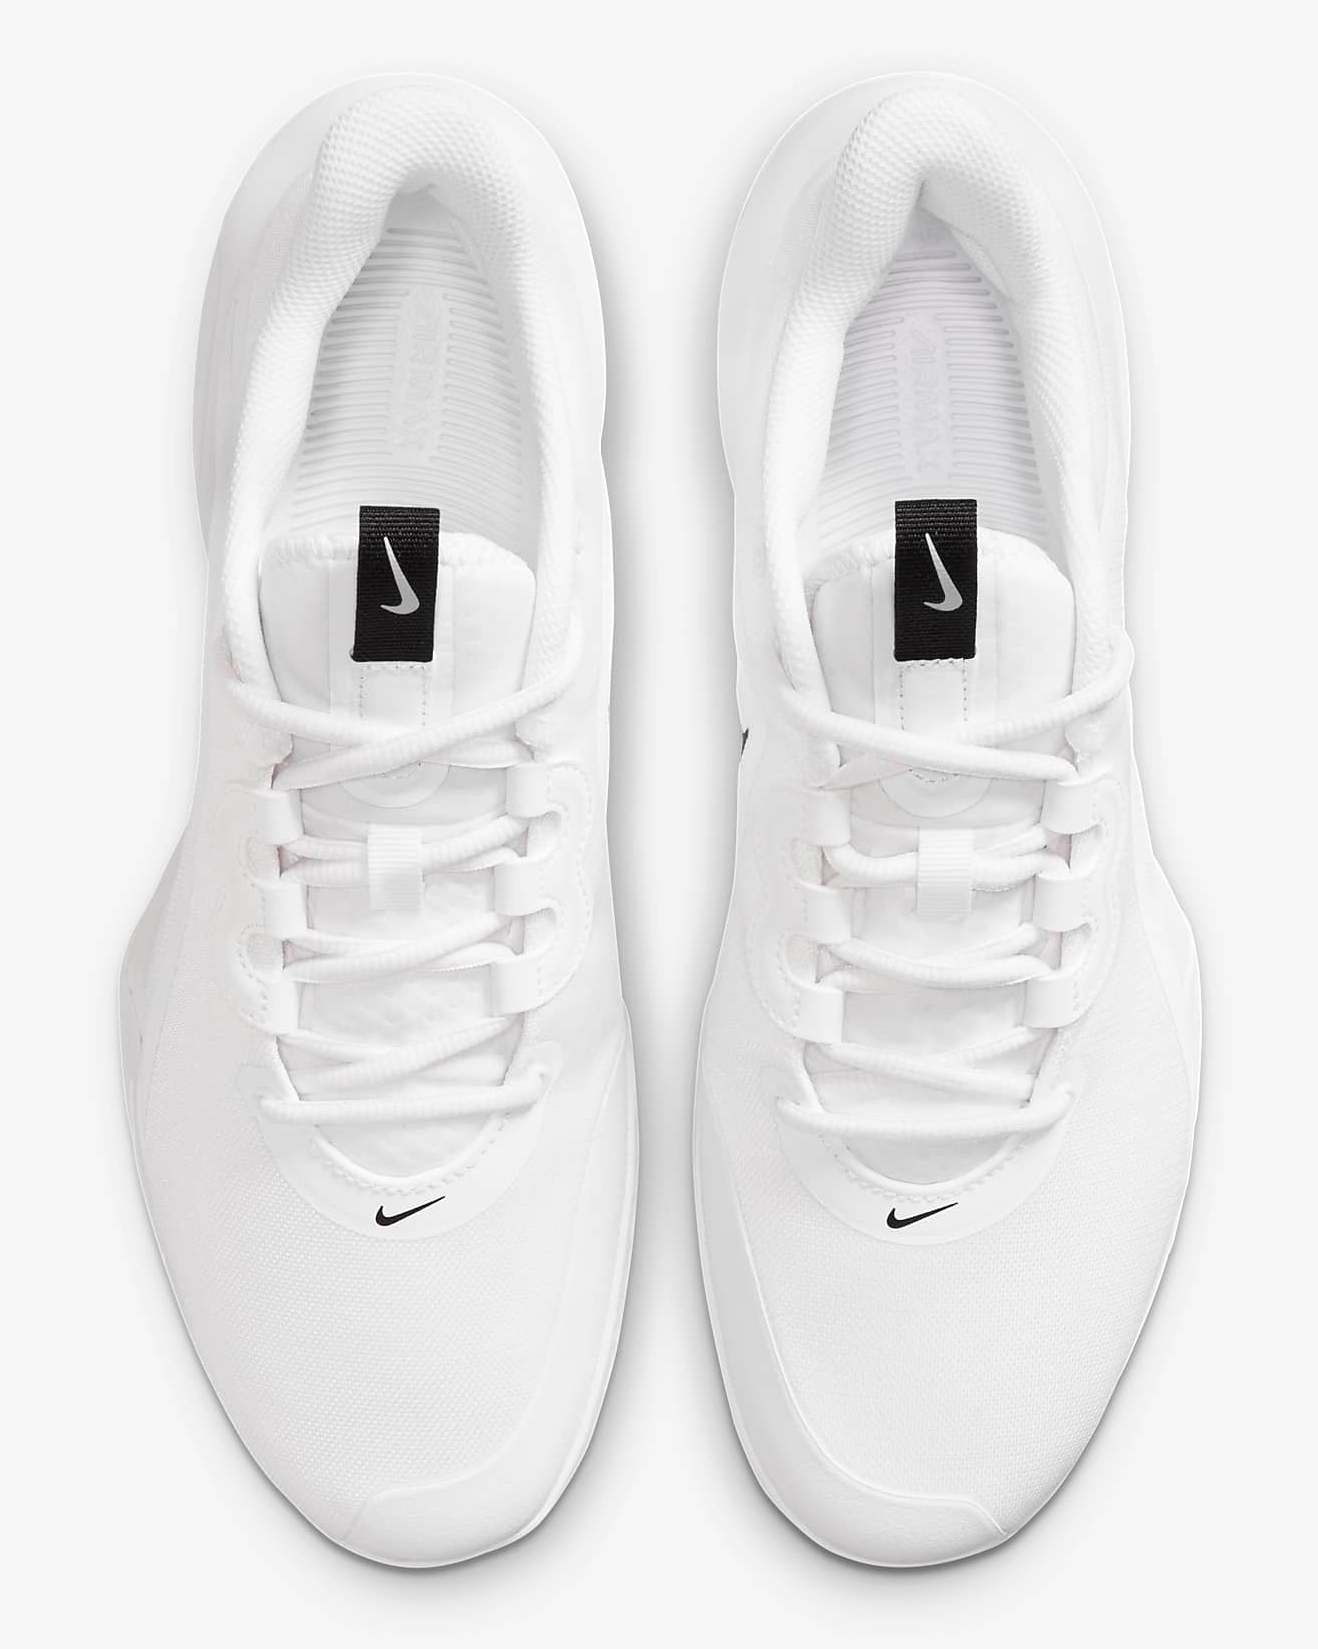 Nike Air Max Volley Tennis Mens Shoes CU4274-100 White/Black